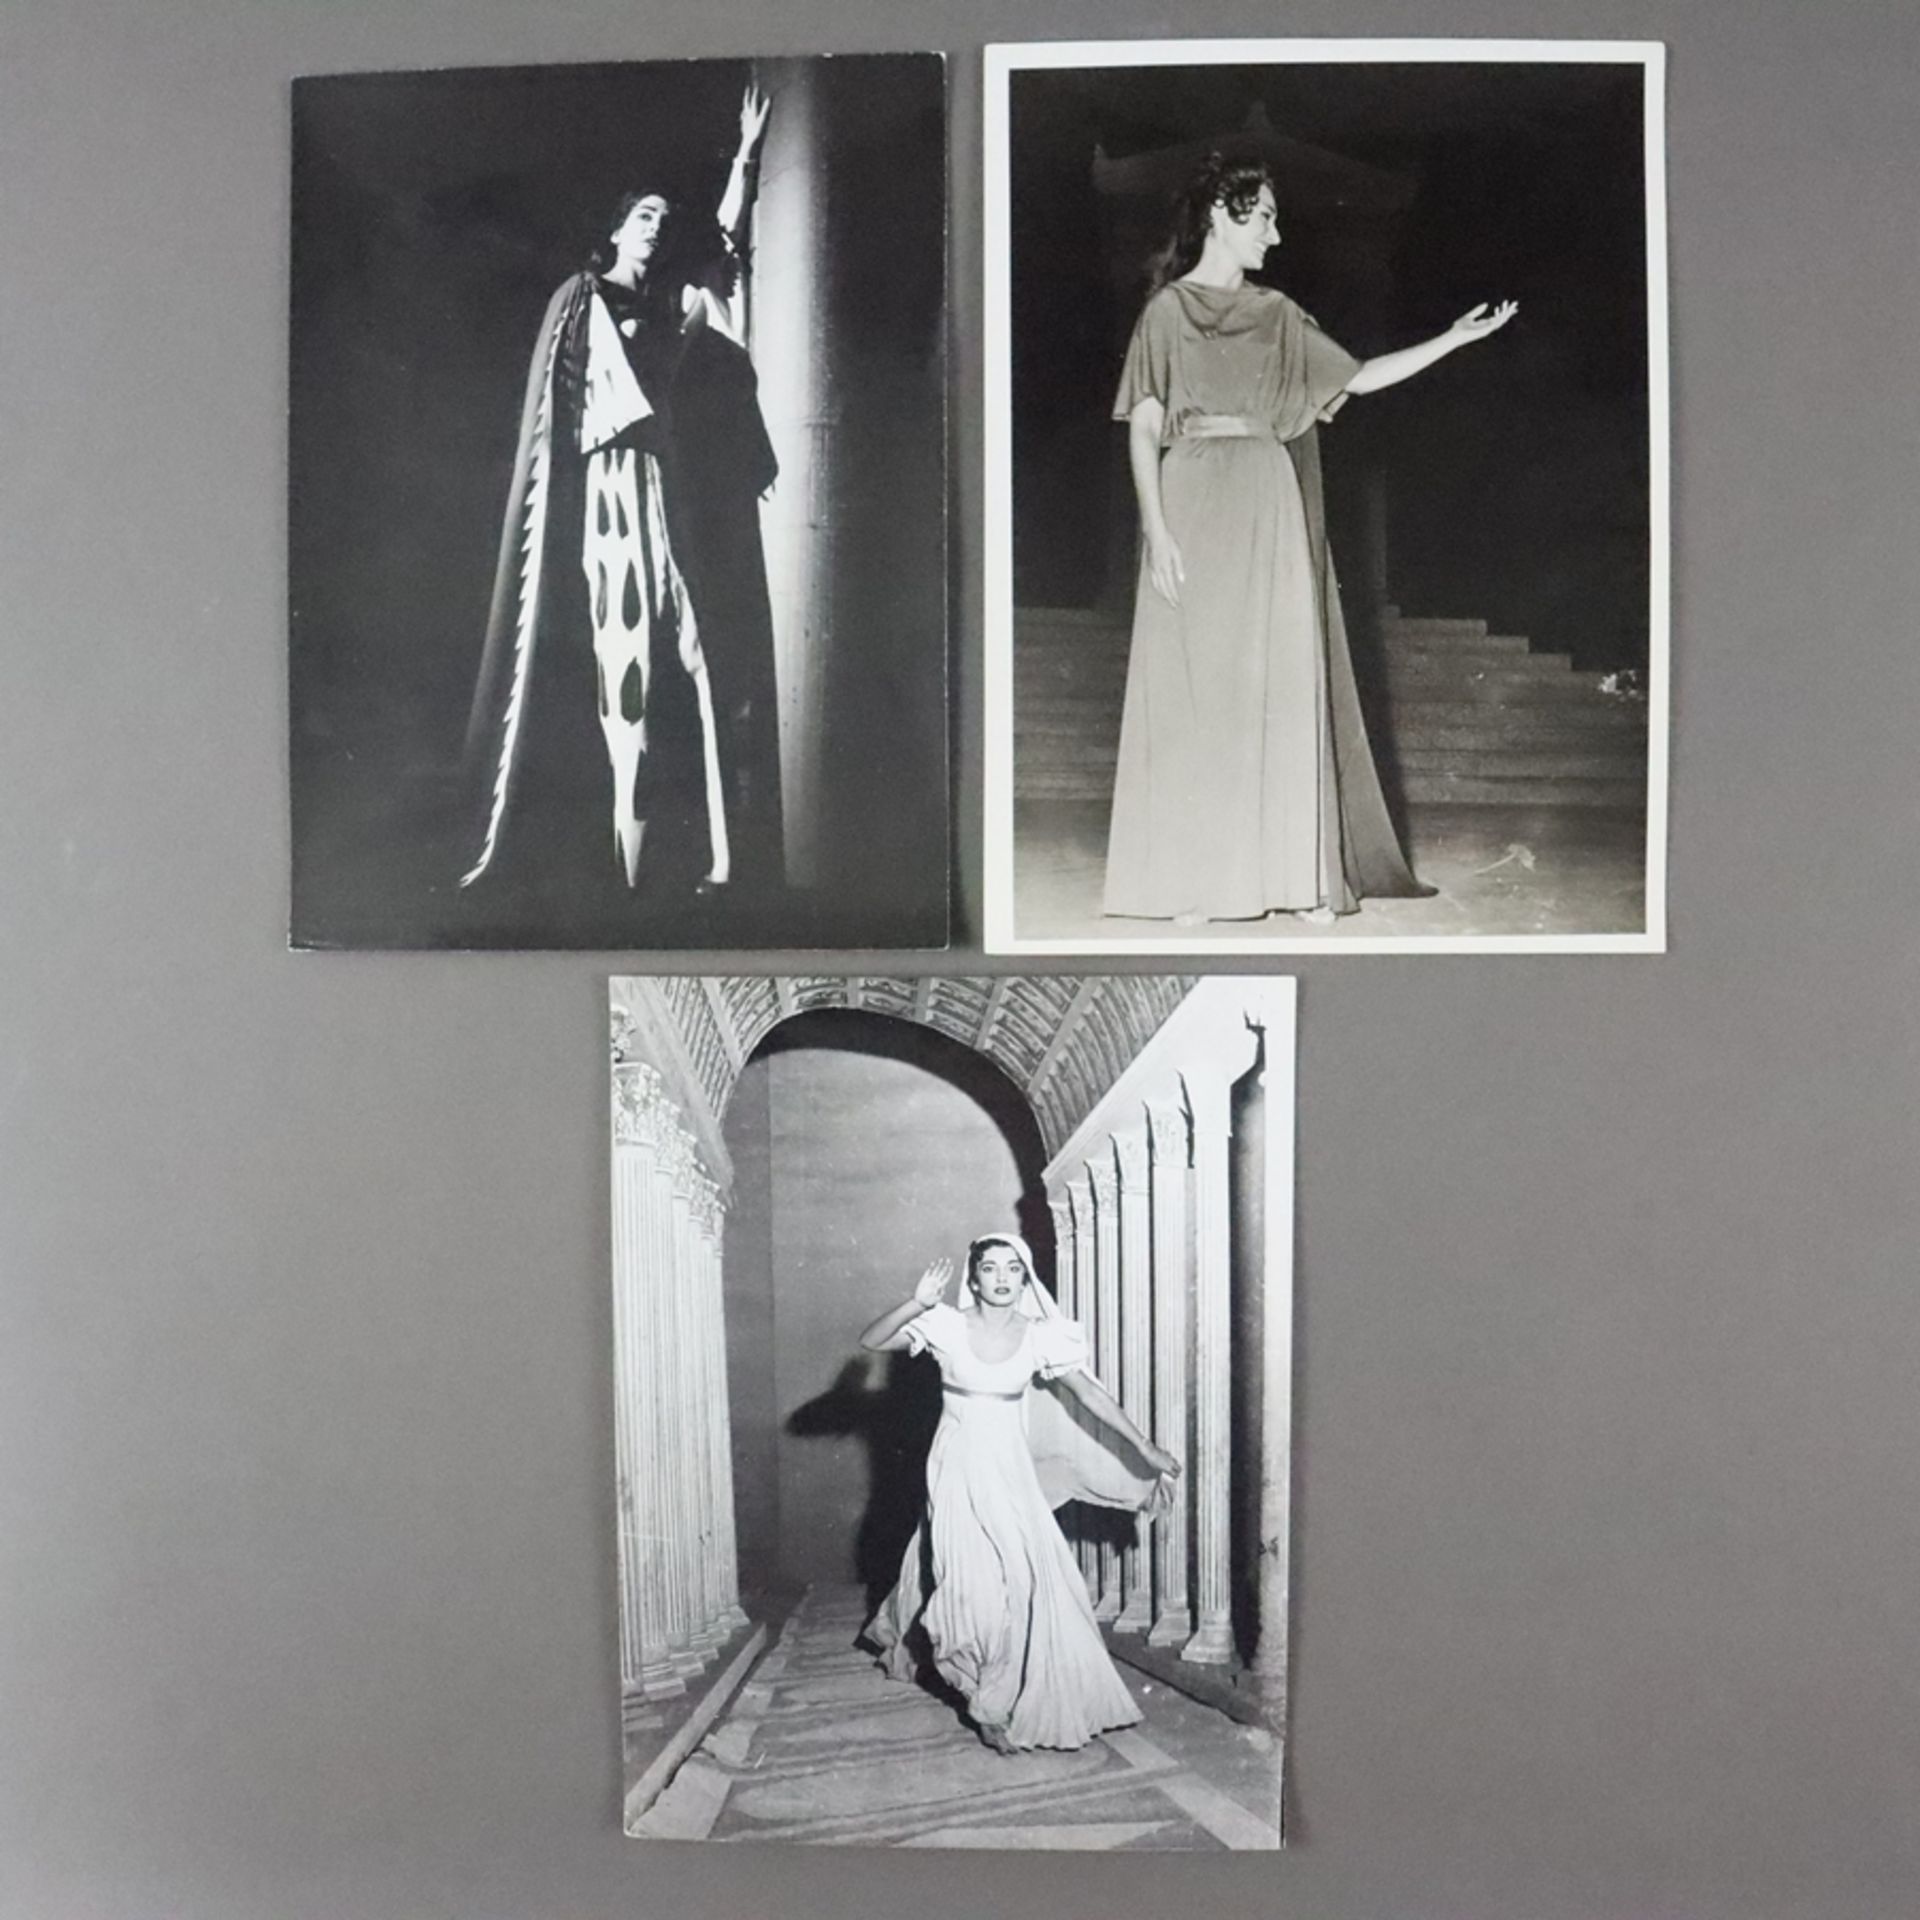 Konvolut zum 100. Geburtstag von Maria Callas (2.12.1923 New York -16. 9.1977 Paris) - 3 s/w Fotogr